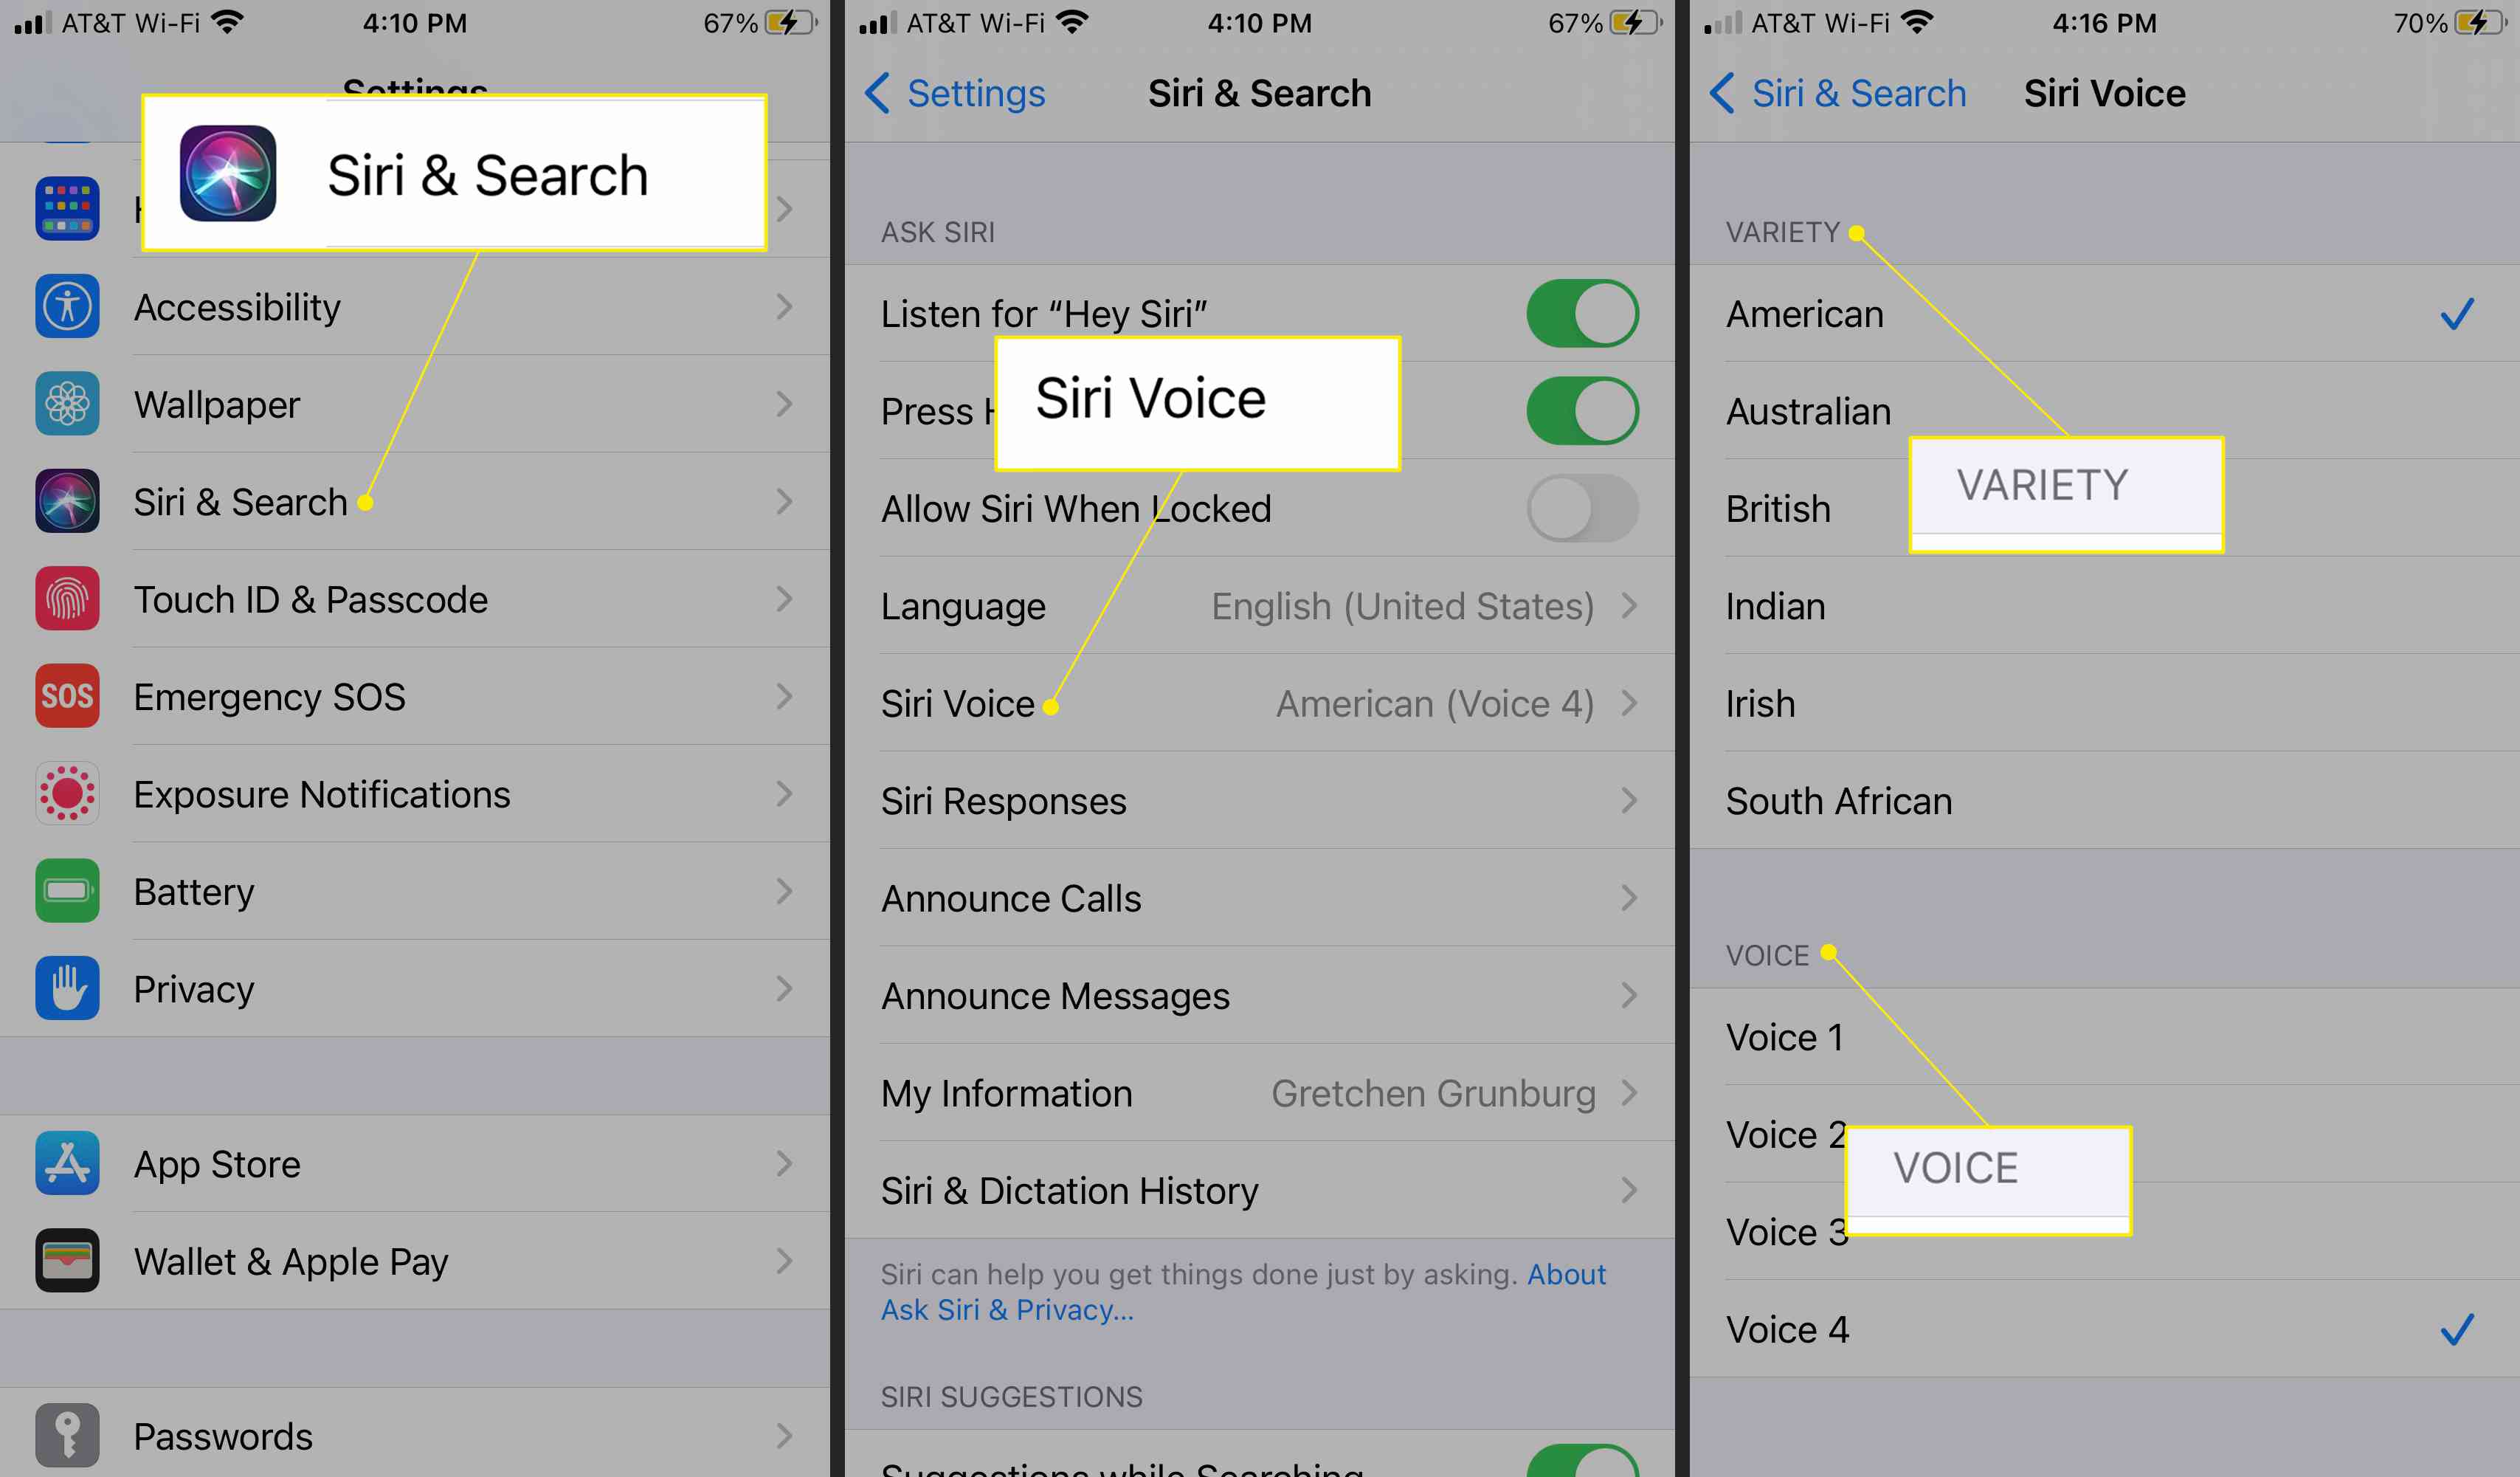 Nastavení iPhone se zvýrazněnými možnostmi Siri & Search, Siri Voice a Variety and Voice